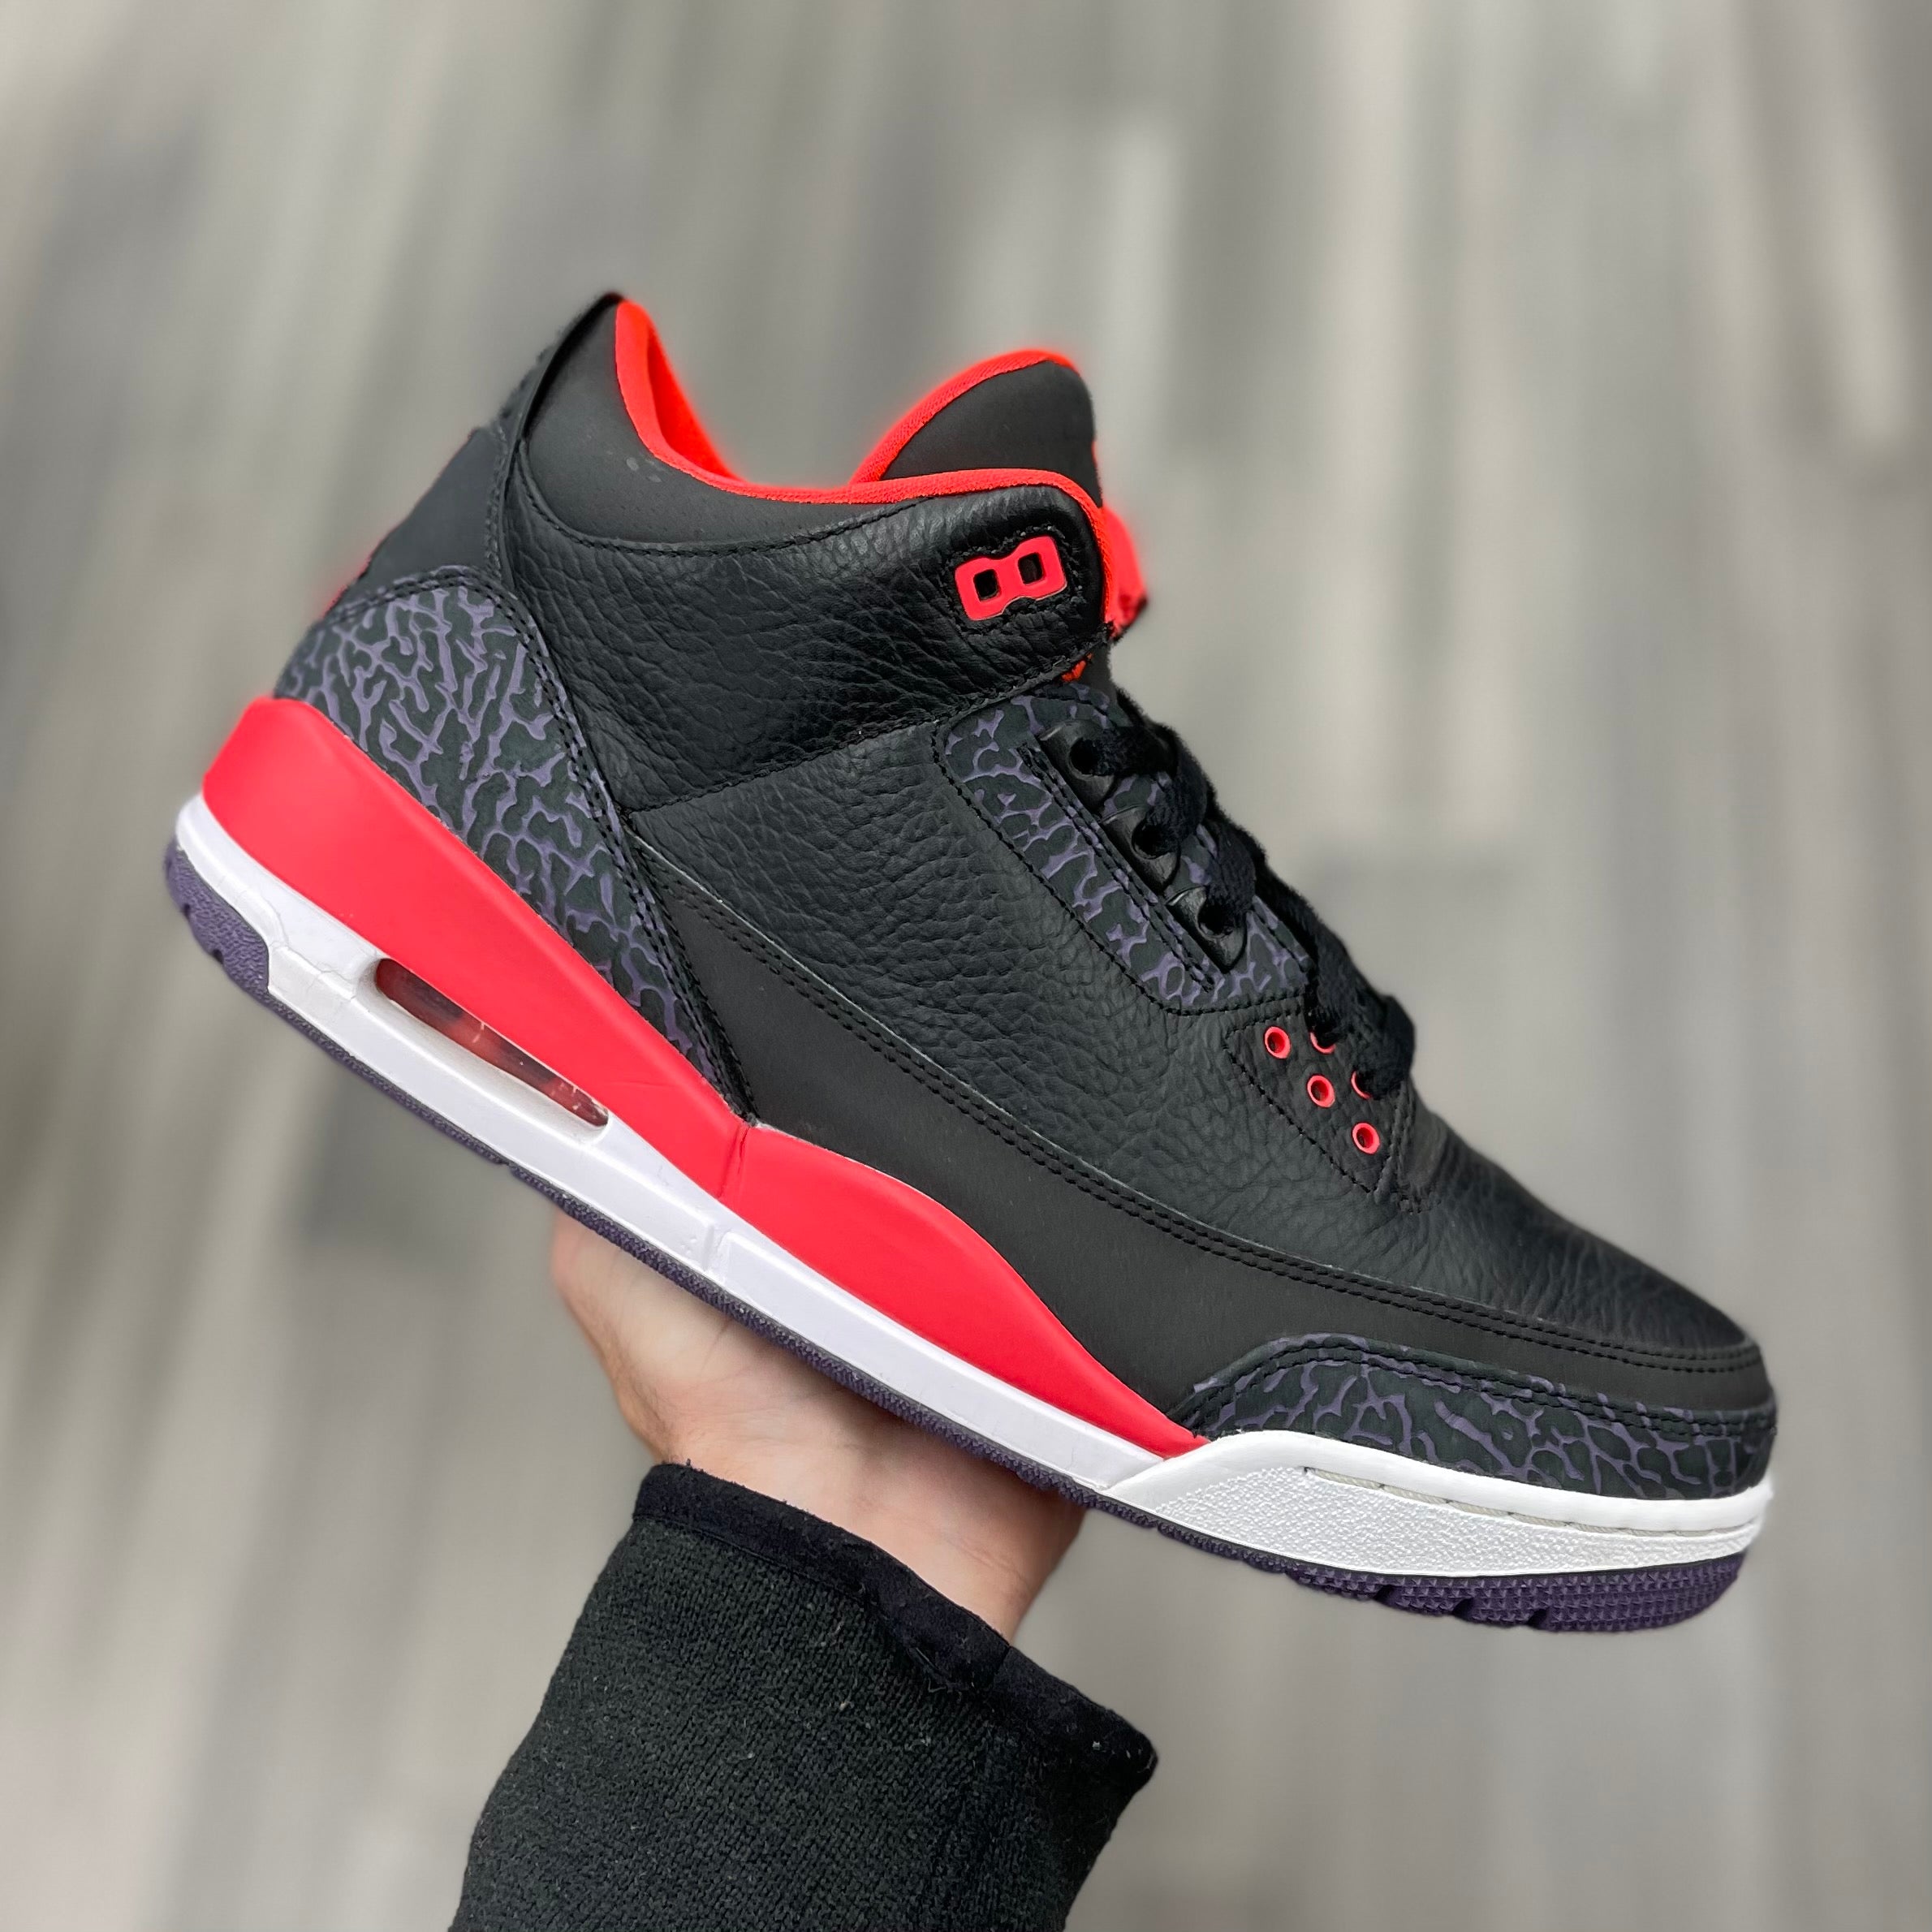 Air Jordan 3 Retro "Crimson“